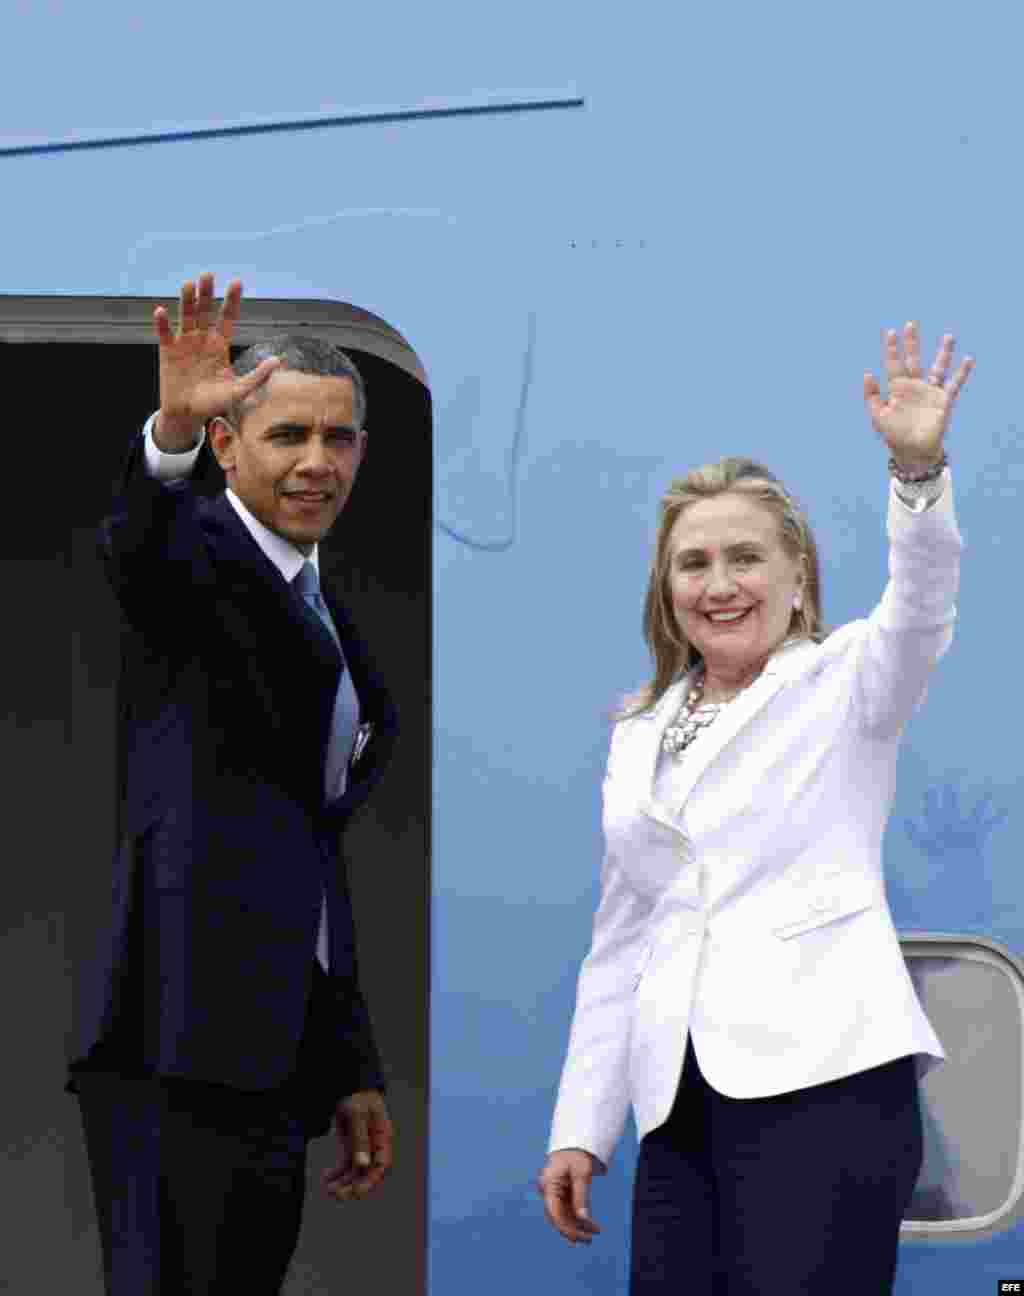 El presidente estadounidense Barack Obama y la Secretaria de Estado Hillary Clinton se despiden en el aeropuerto internacional de Rangún, Birmania, hoy, 19 de noviembre de 2012. Barack Obama realizó hoy una visita histórica a Birmania (Myanmar) para alent